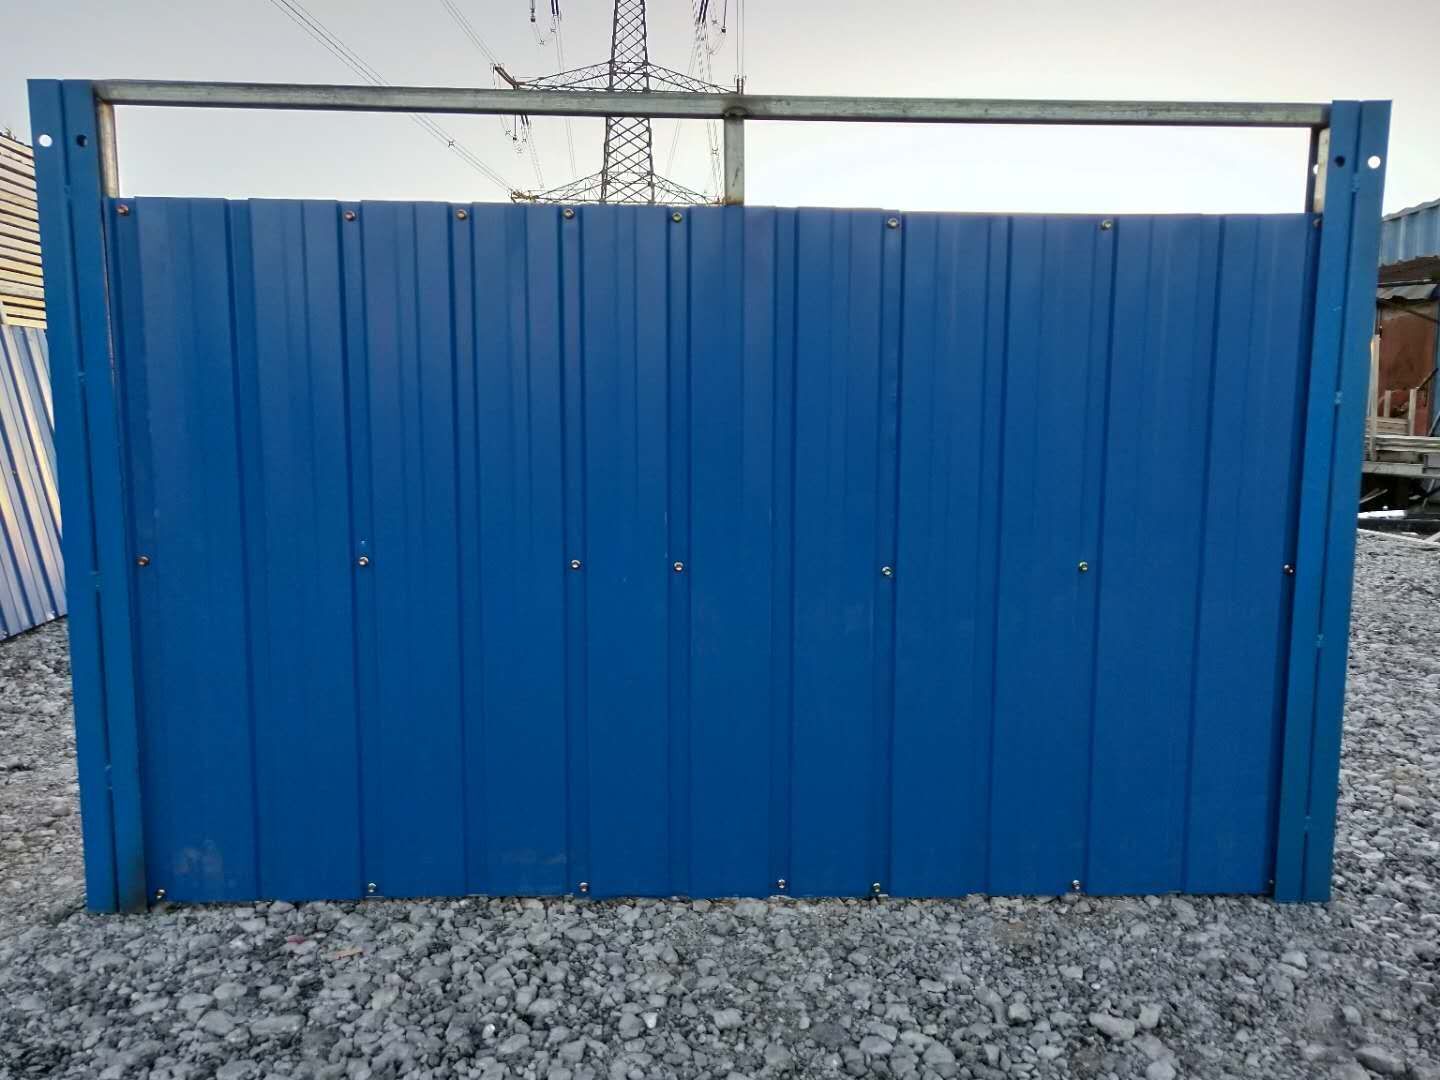 保定围挡板 找瑞丰彩钢板厂家 提供制作 安装 保定市彩钢围挡板图片